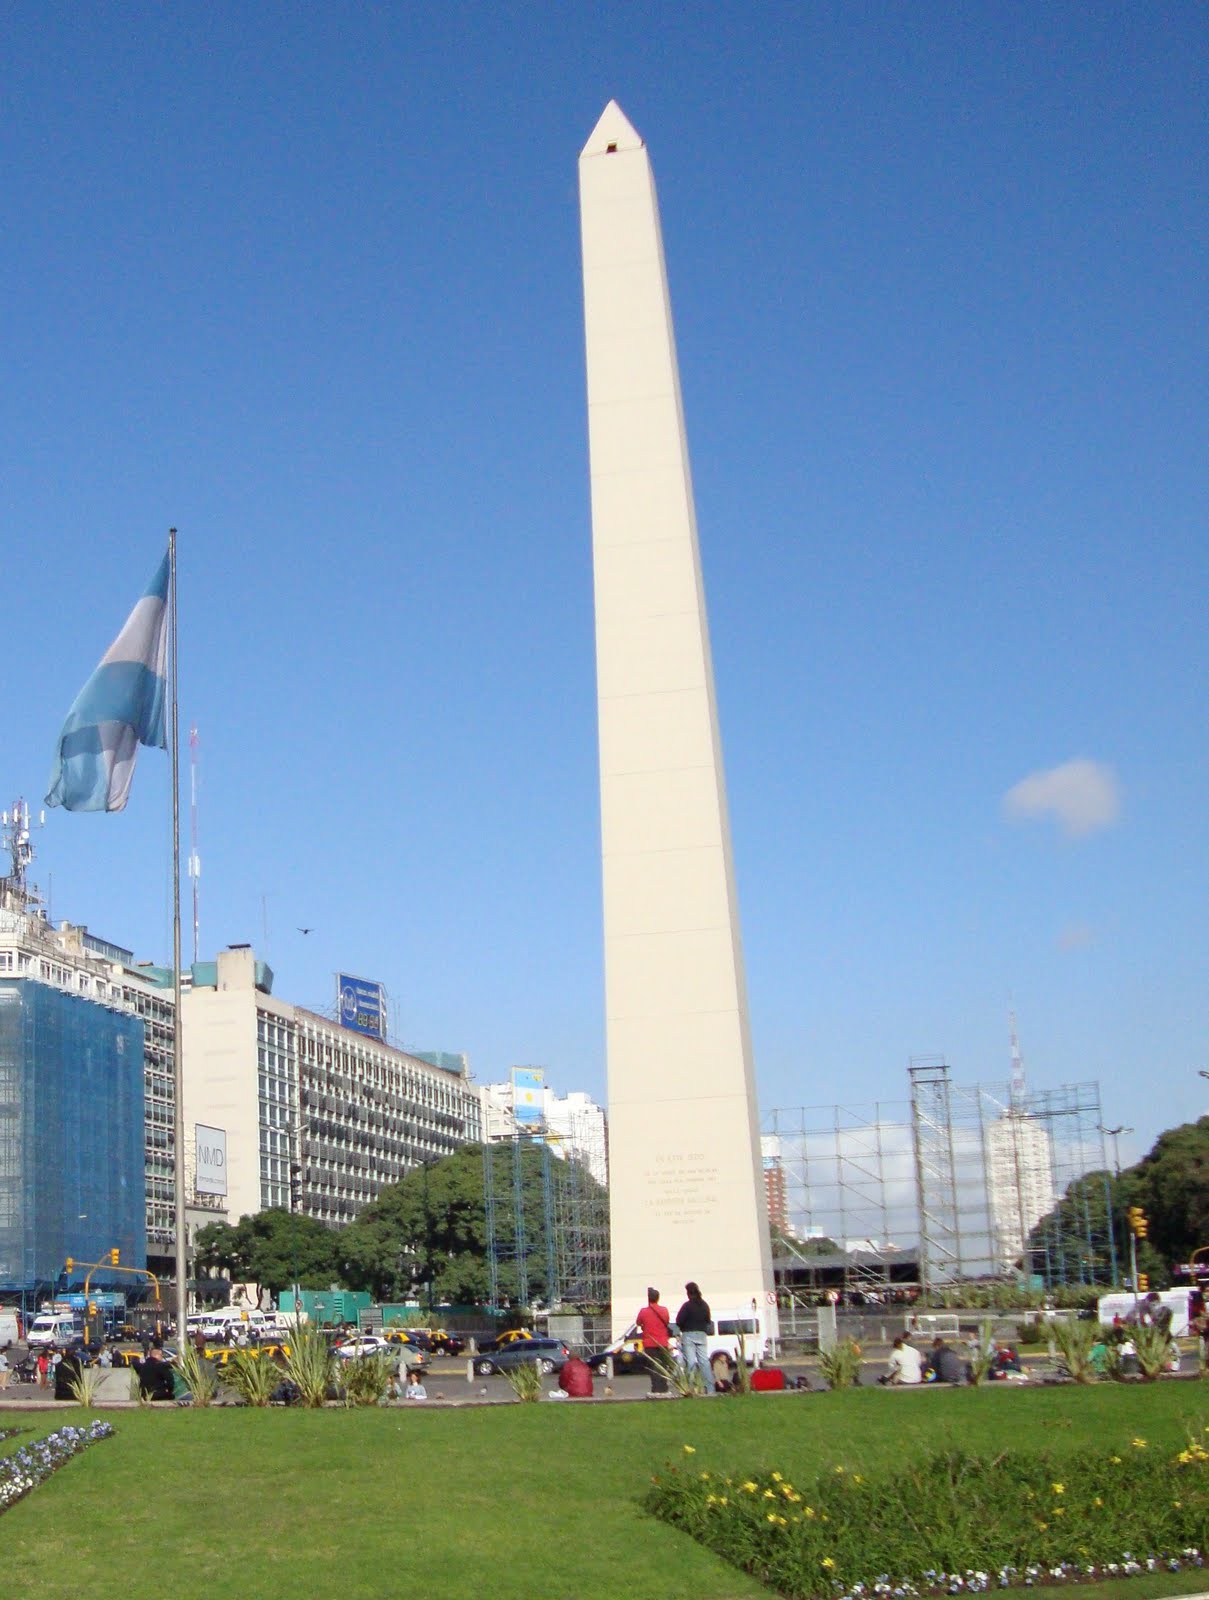 Fi's Adventures in South America: El Obelisco